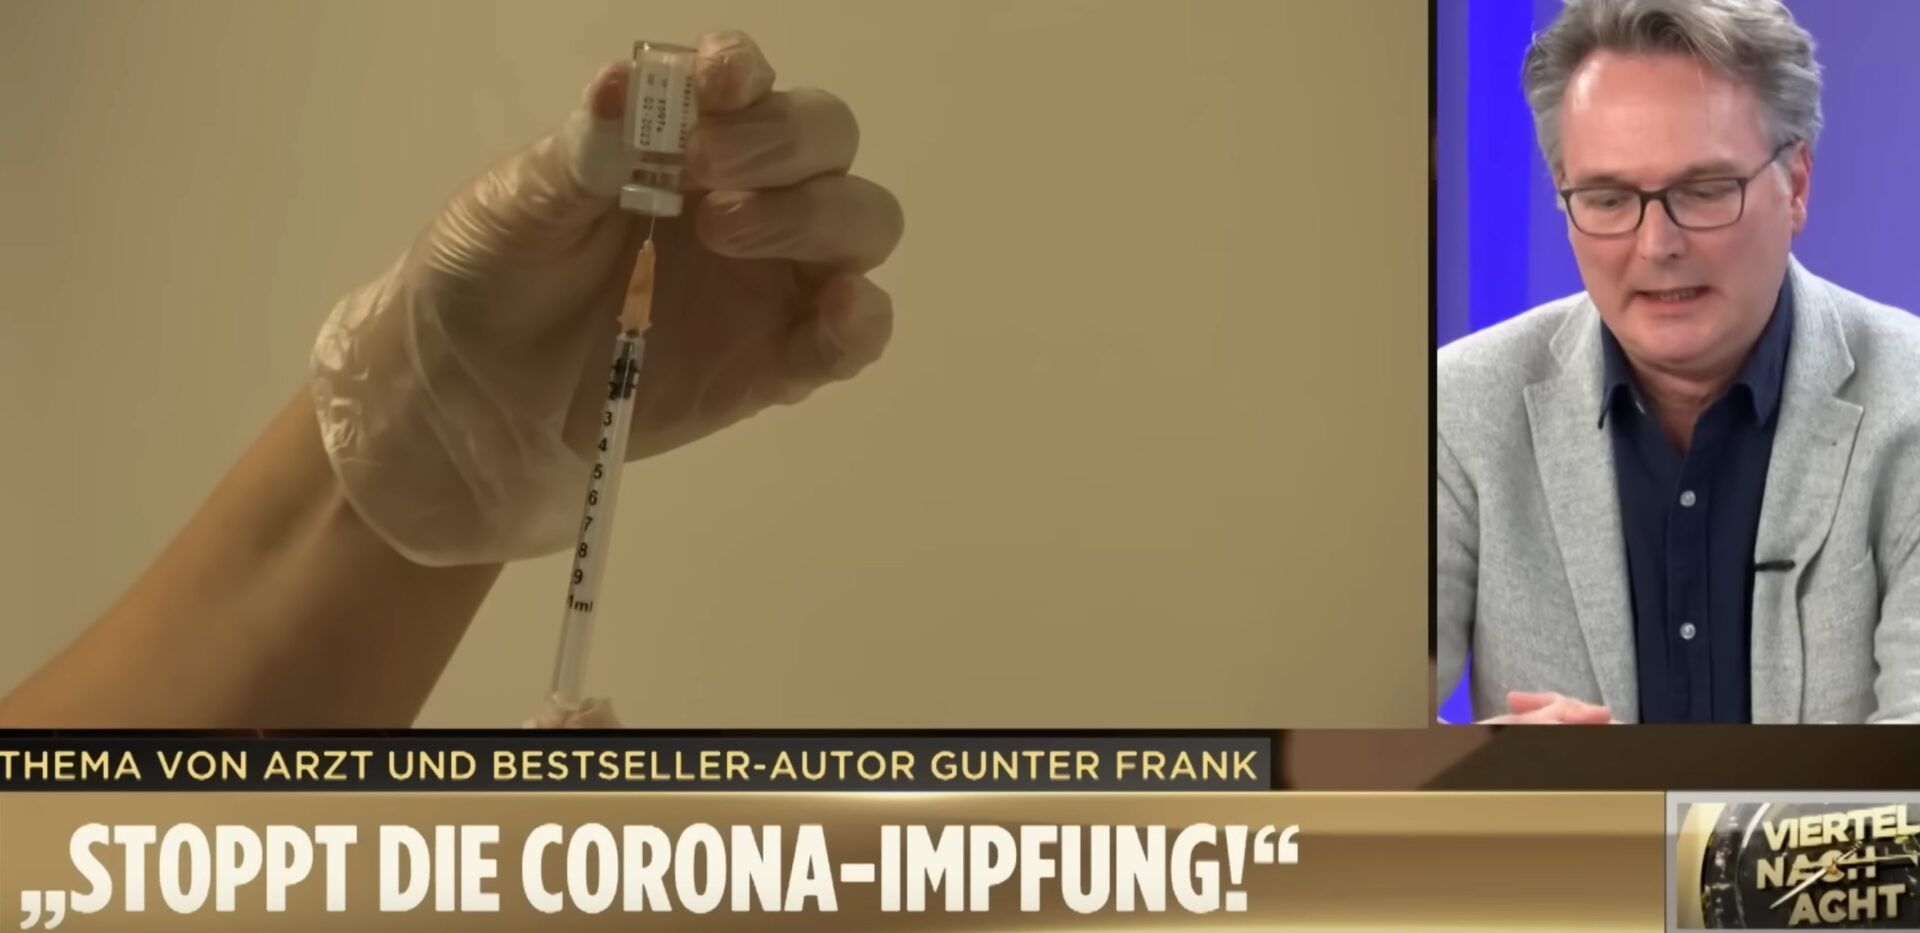 dr.-gunter-frank-reicht-es-–-er-behandelt-impfopfer-und-sein-appell-an-die-politik:-„stoppt-die-corona-impfung!“